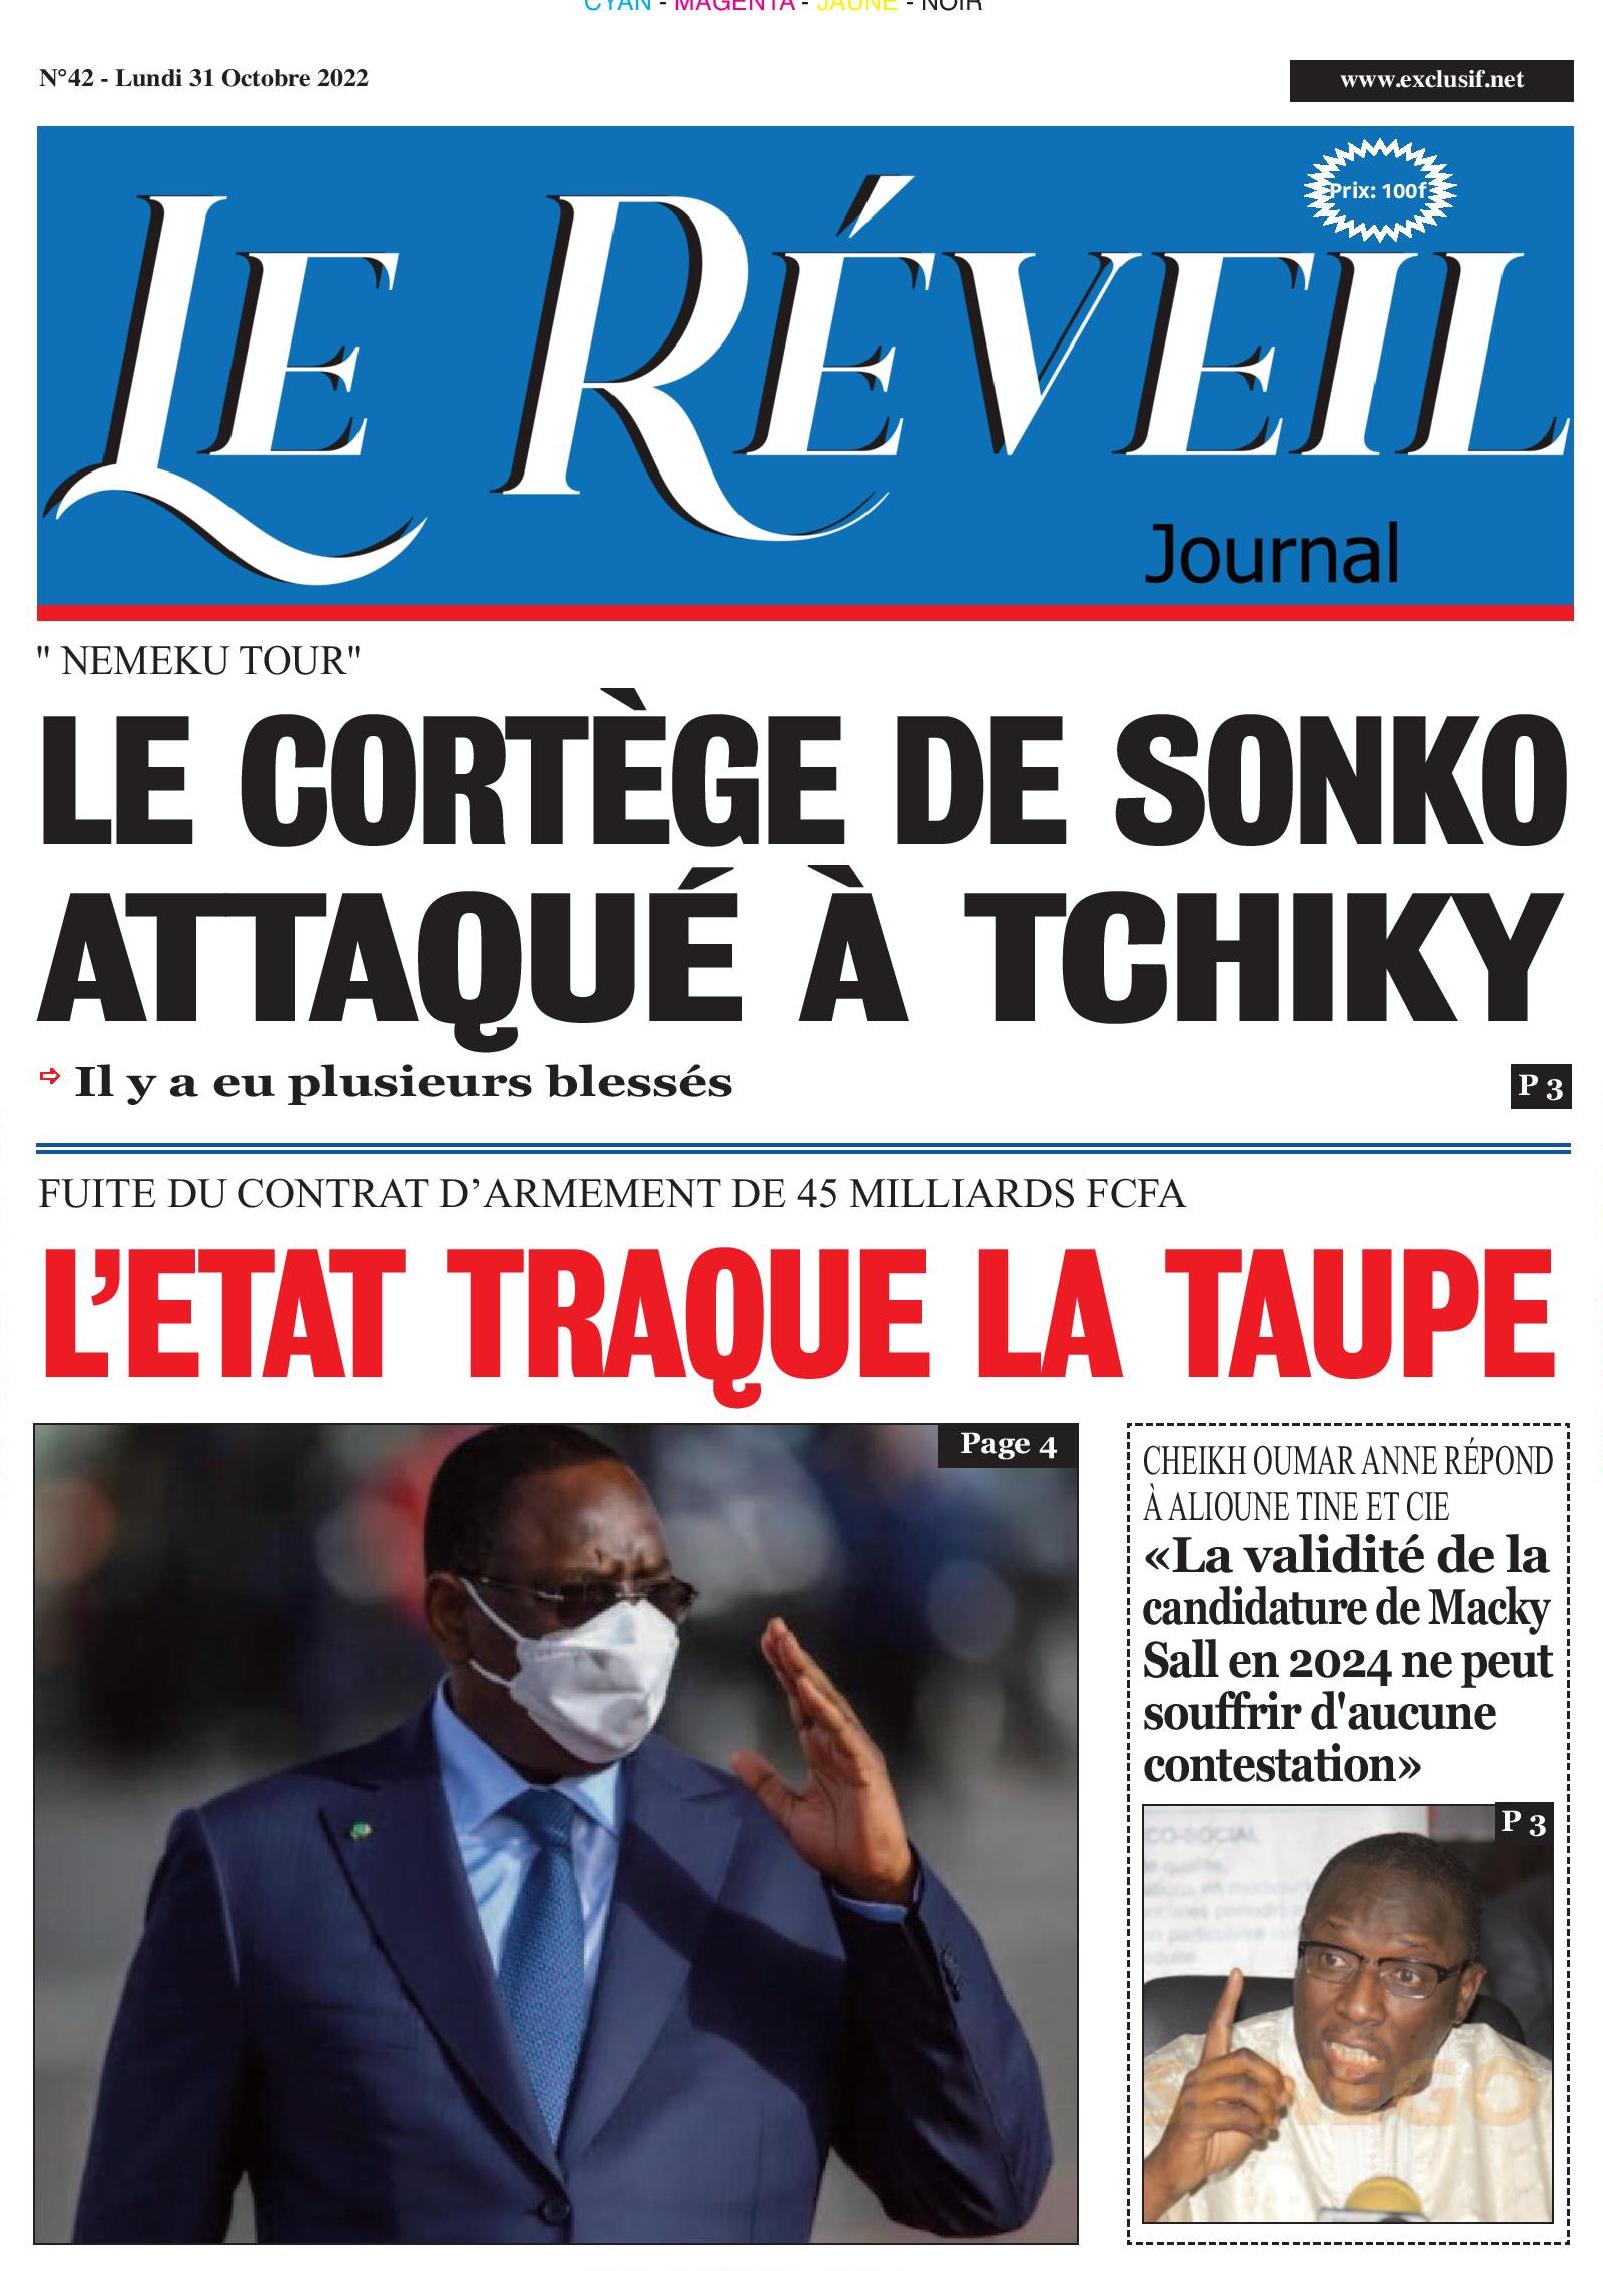 Le Quotidien "Le Réveil" du Lundi 31 Octobre 2022